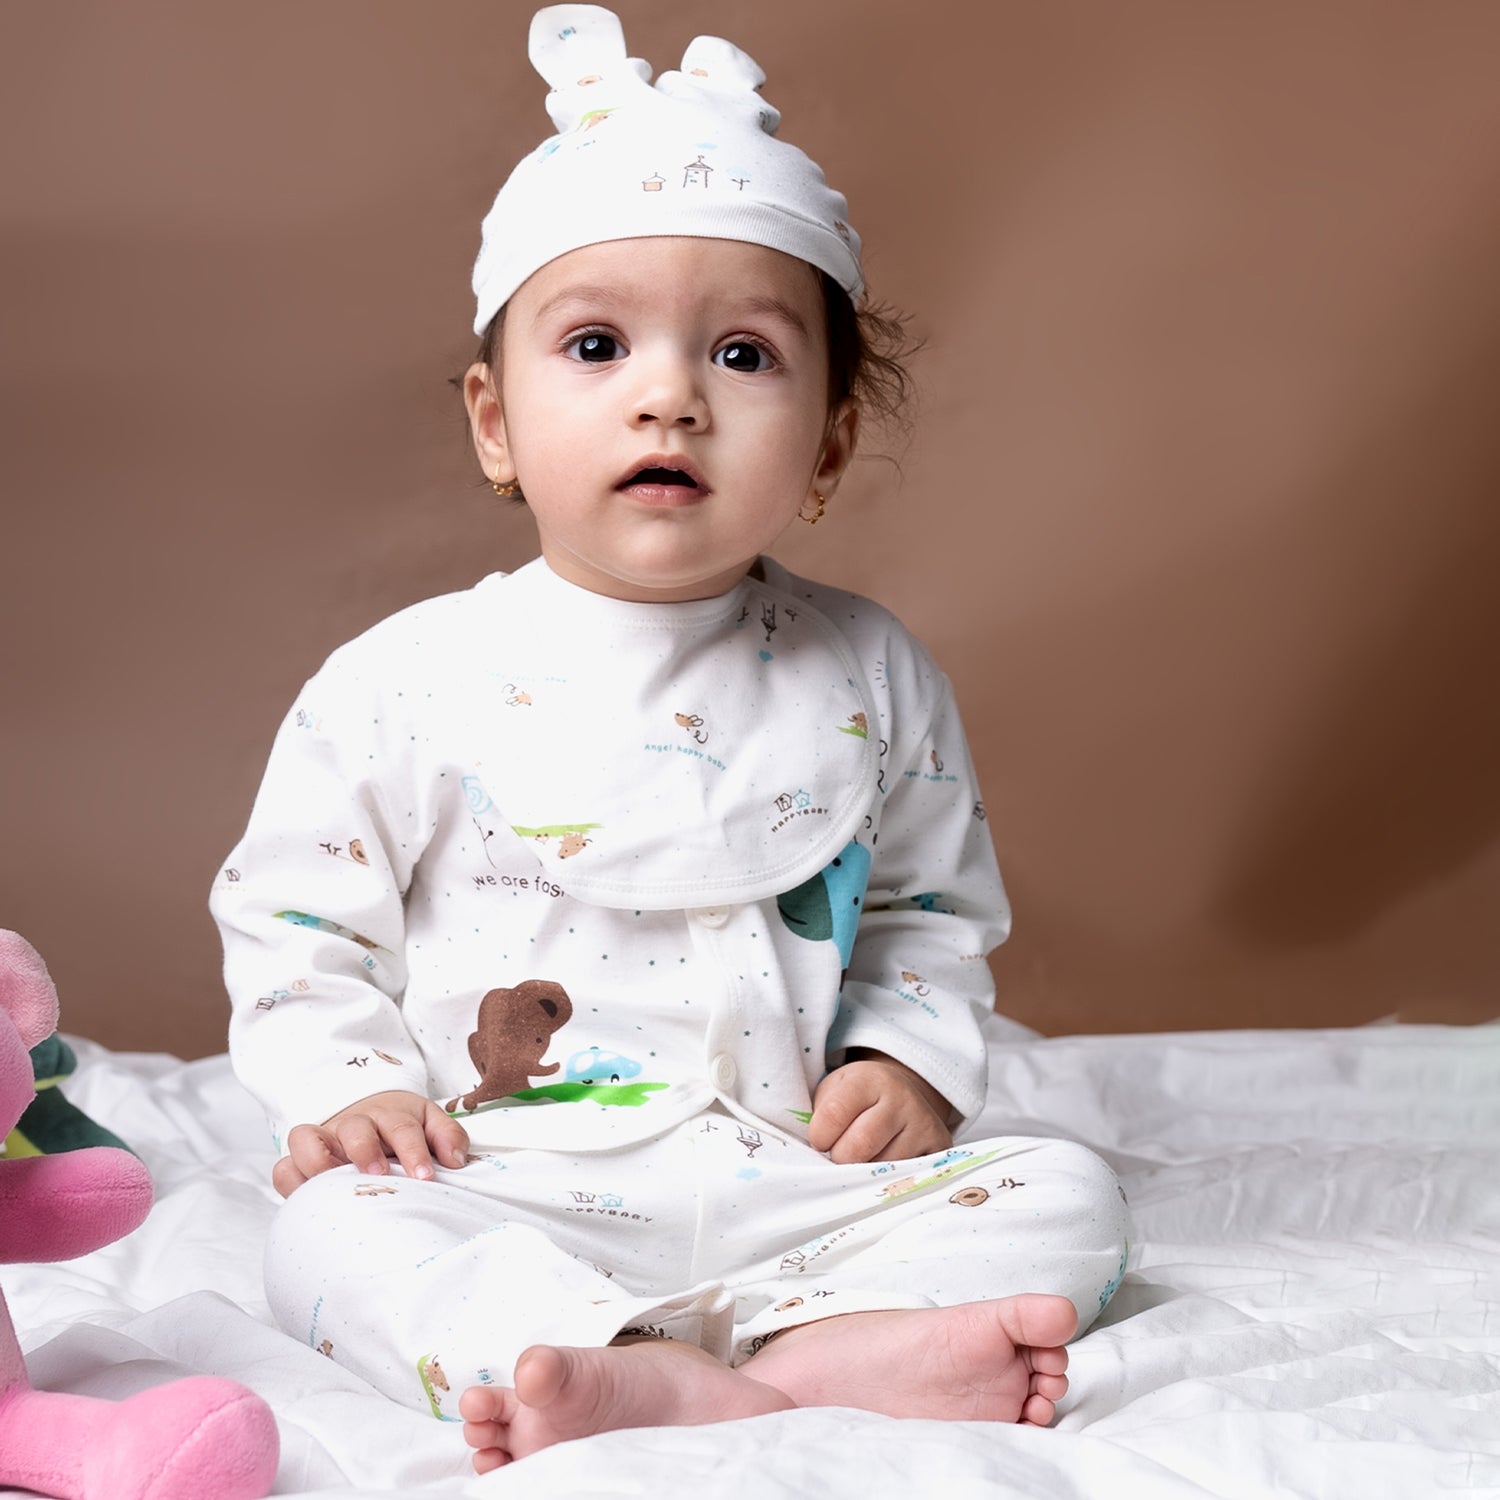 Baby Moo Animal Print Cap Bib Pyjamas 5 Pcs Clothing Gift Set - Blue